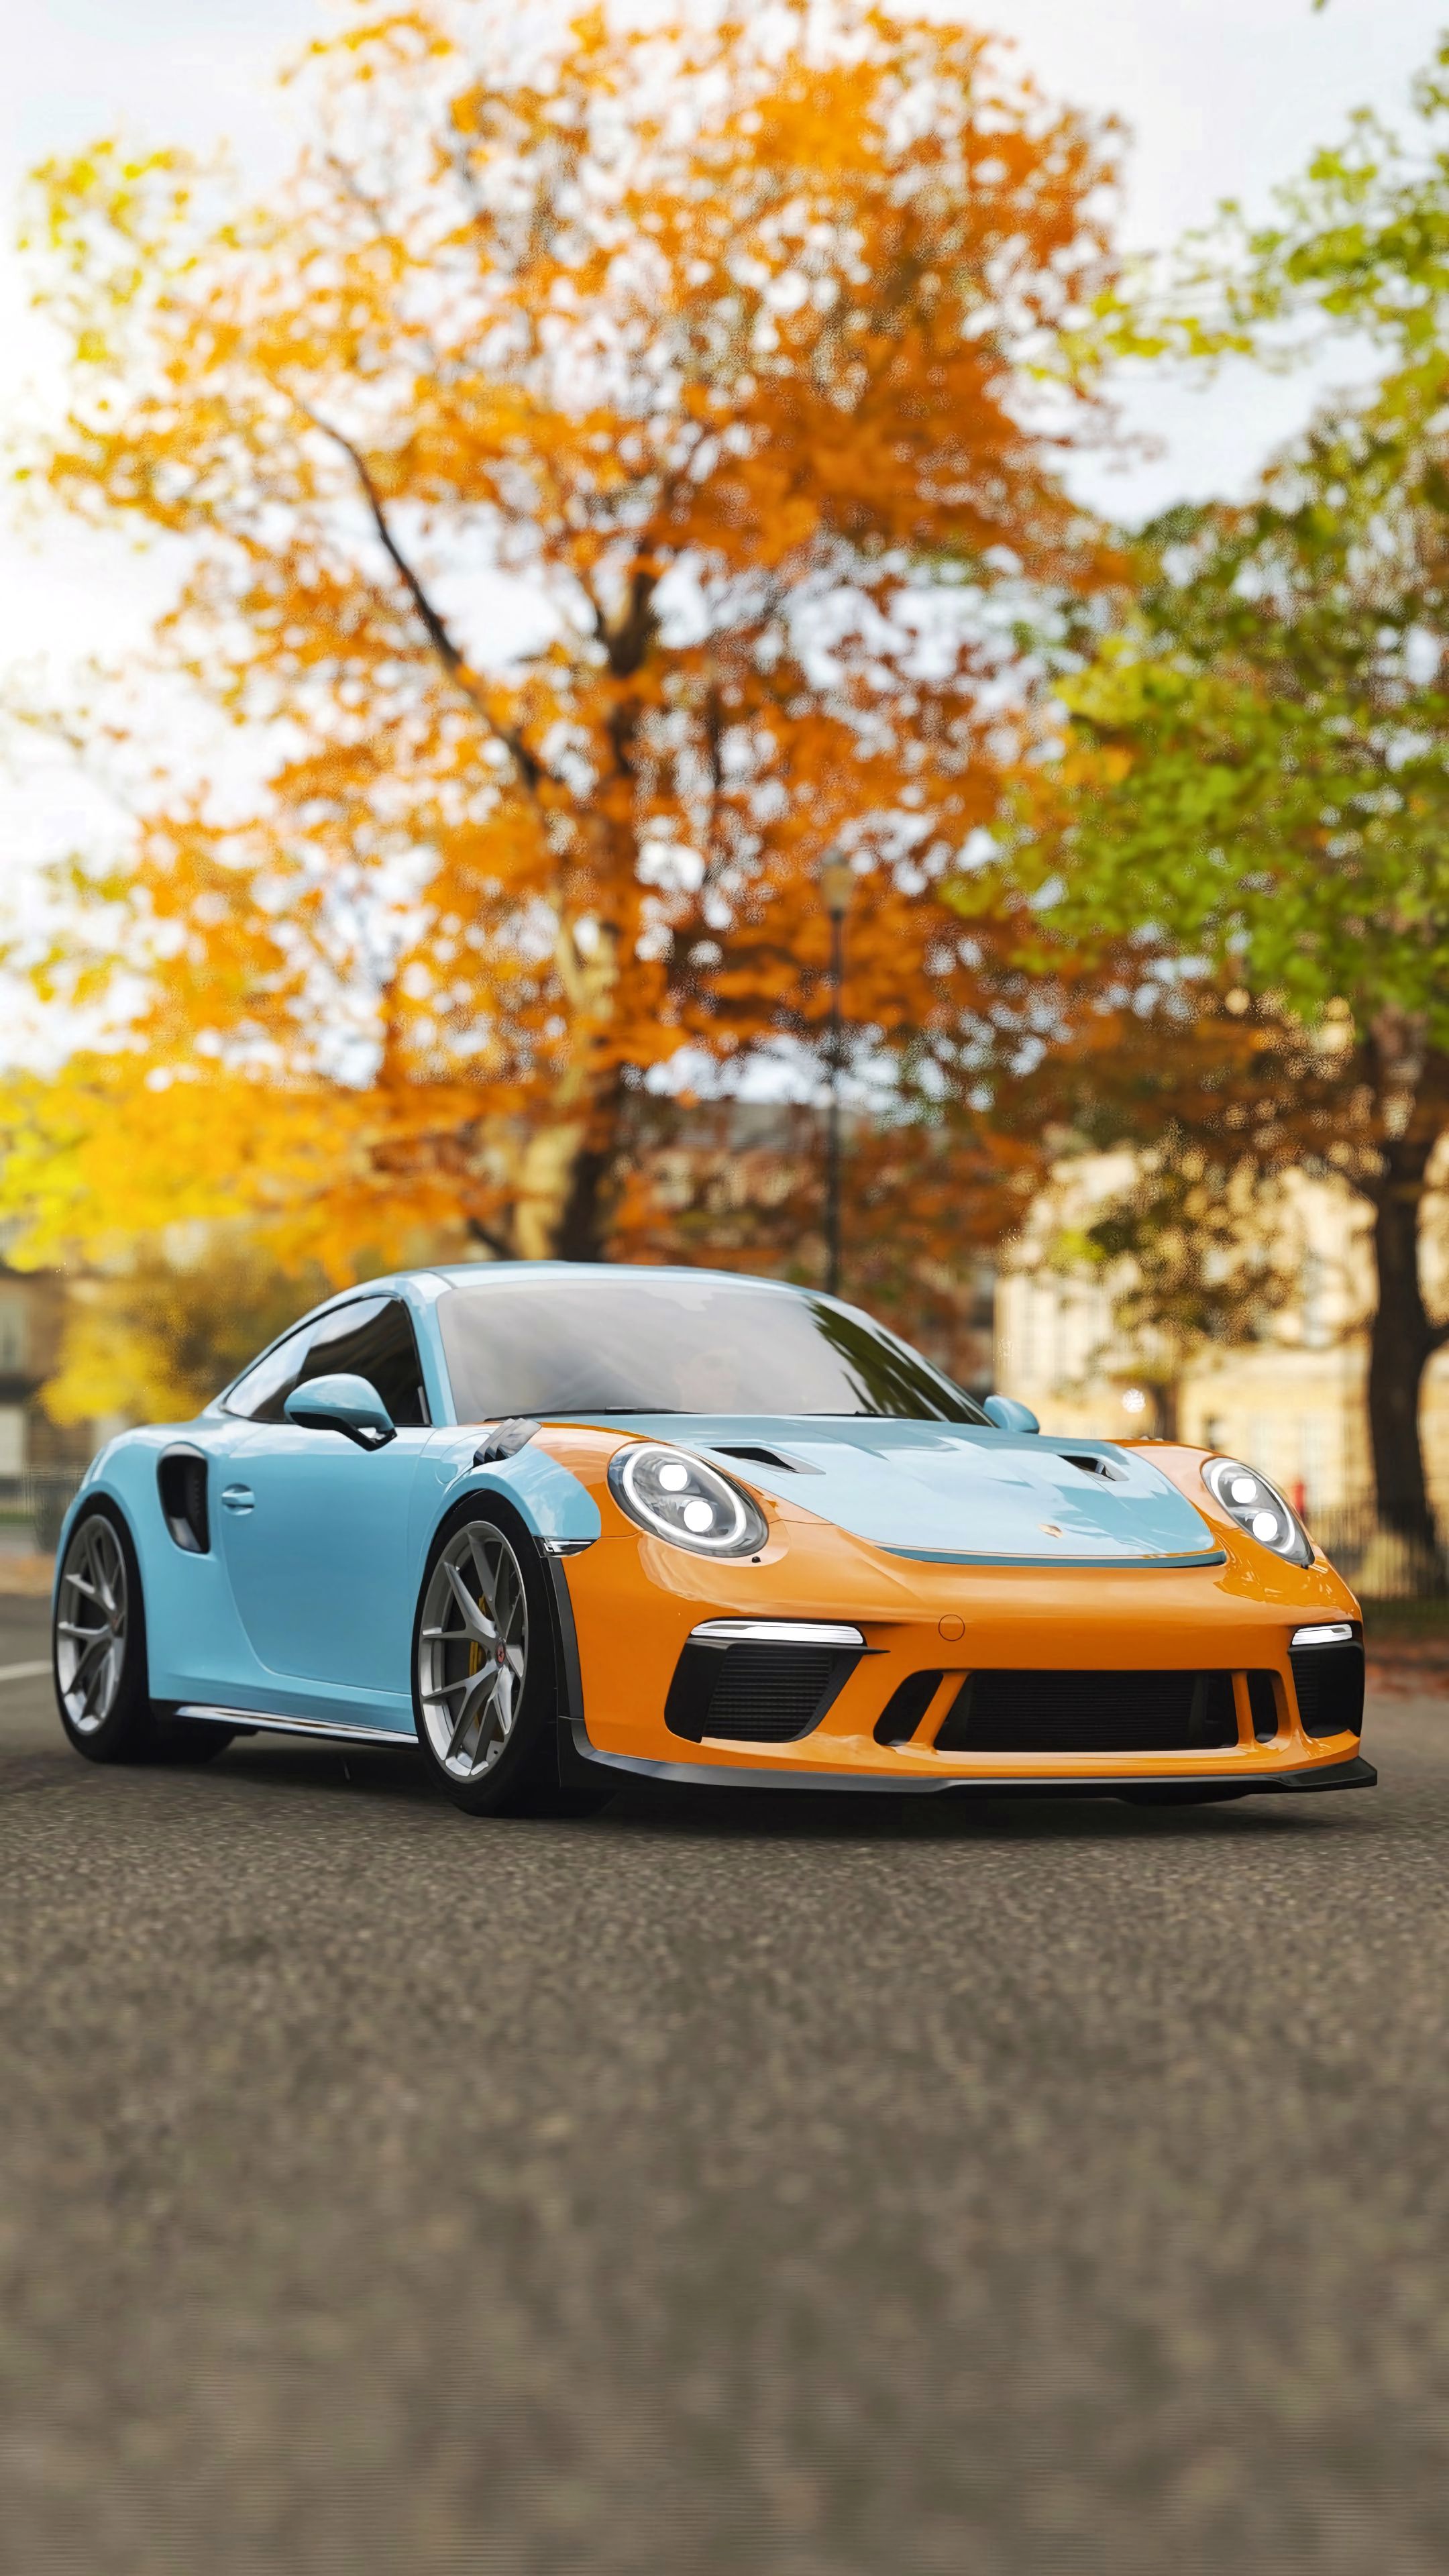 Скачать обои Porsche 911 Gt3 на телефон бесплатно